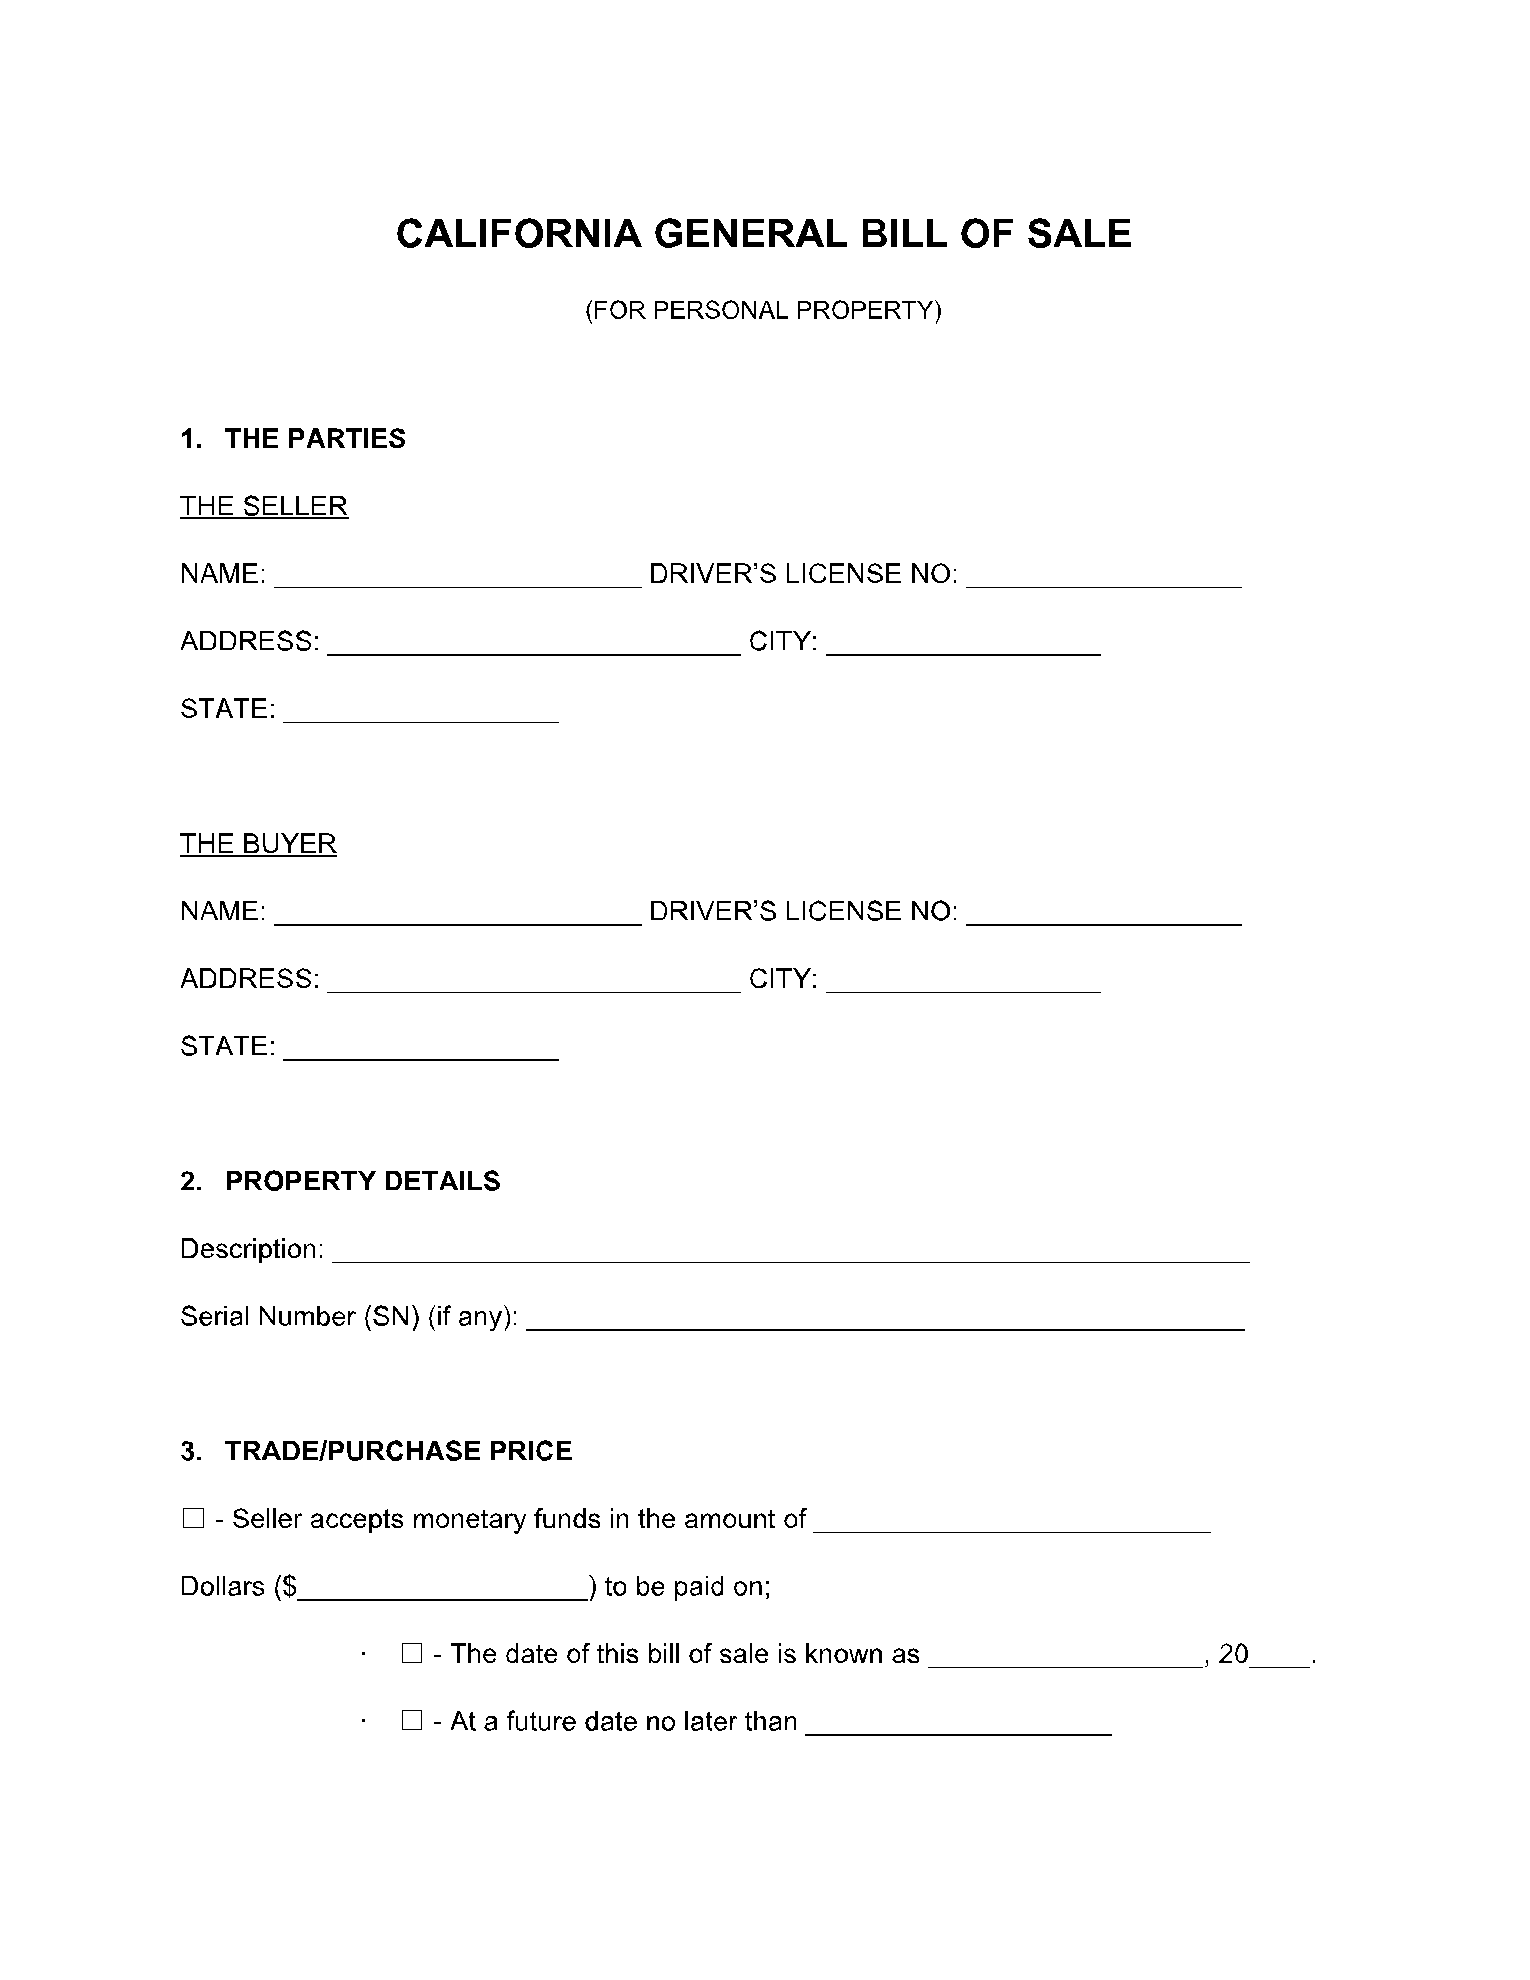 California Bill of Sale 1